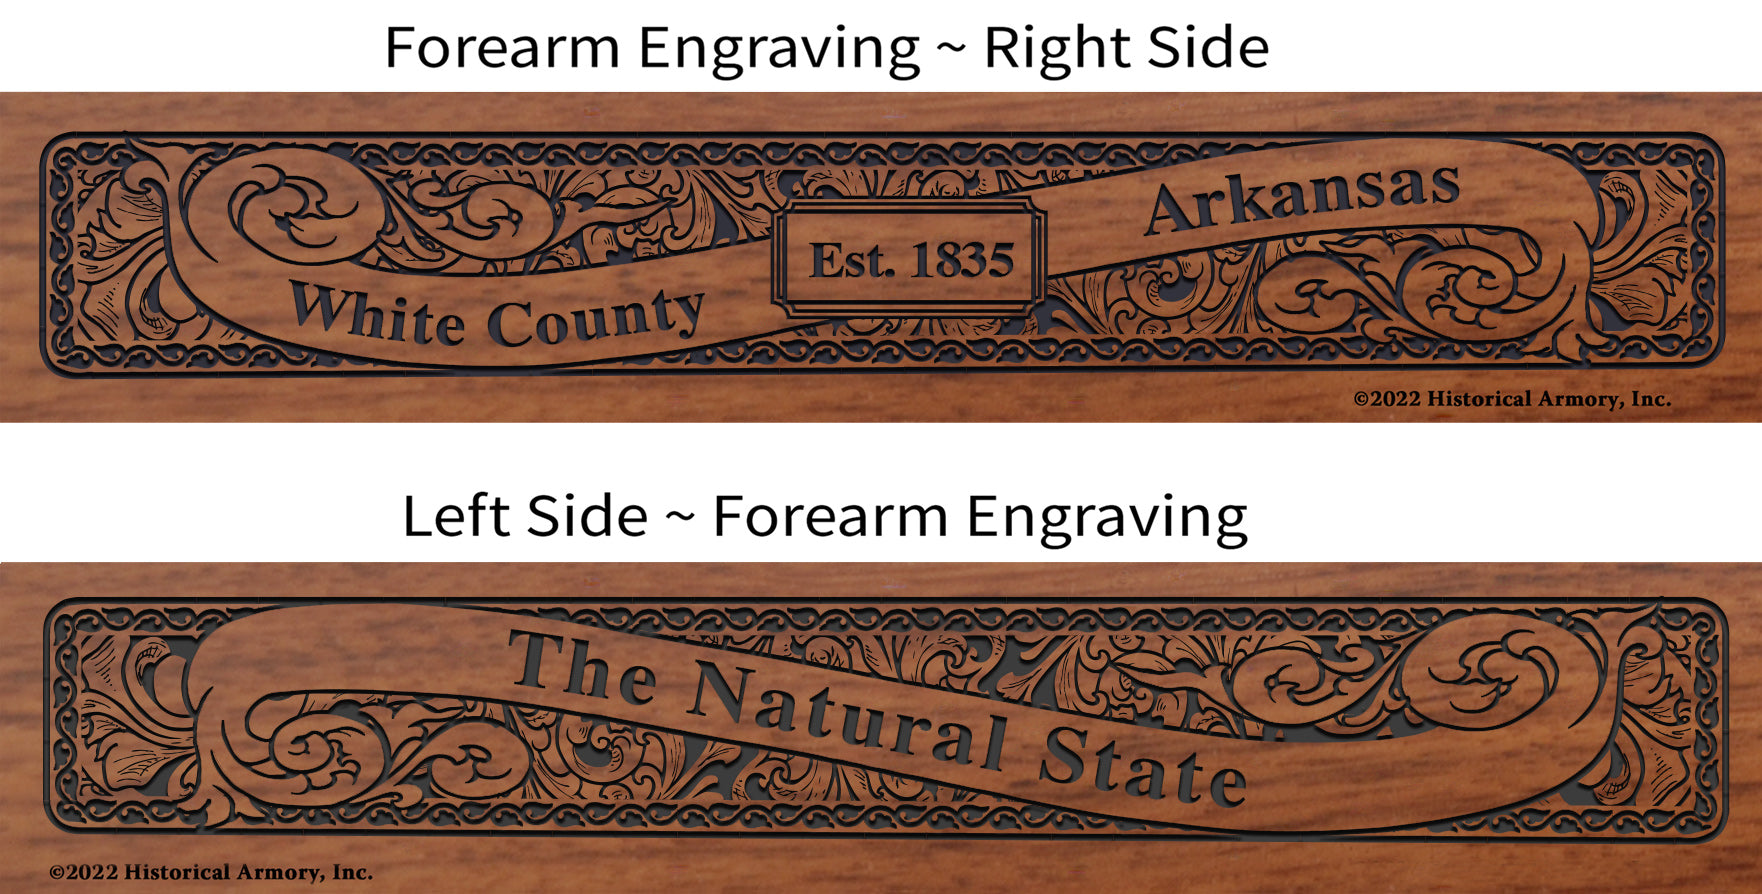 White County Arkansas Engraved Rifle Forearm